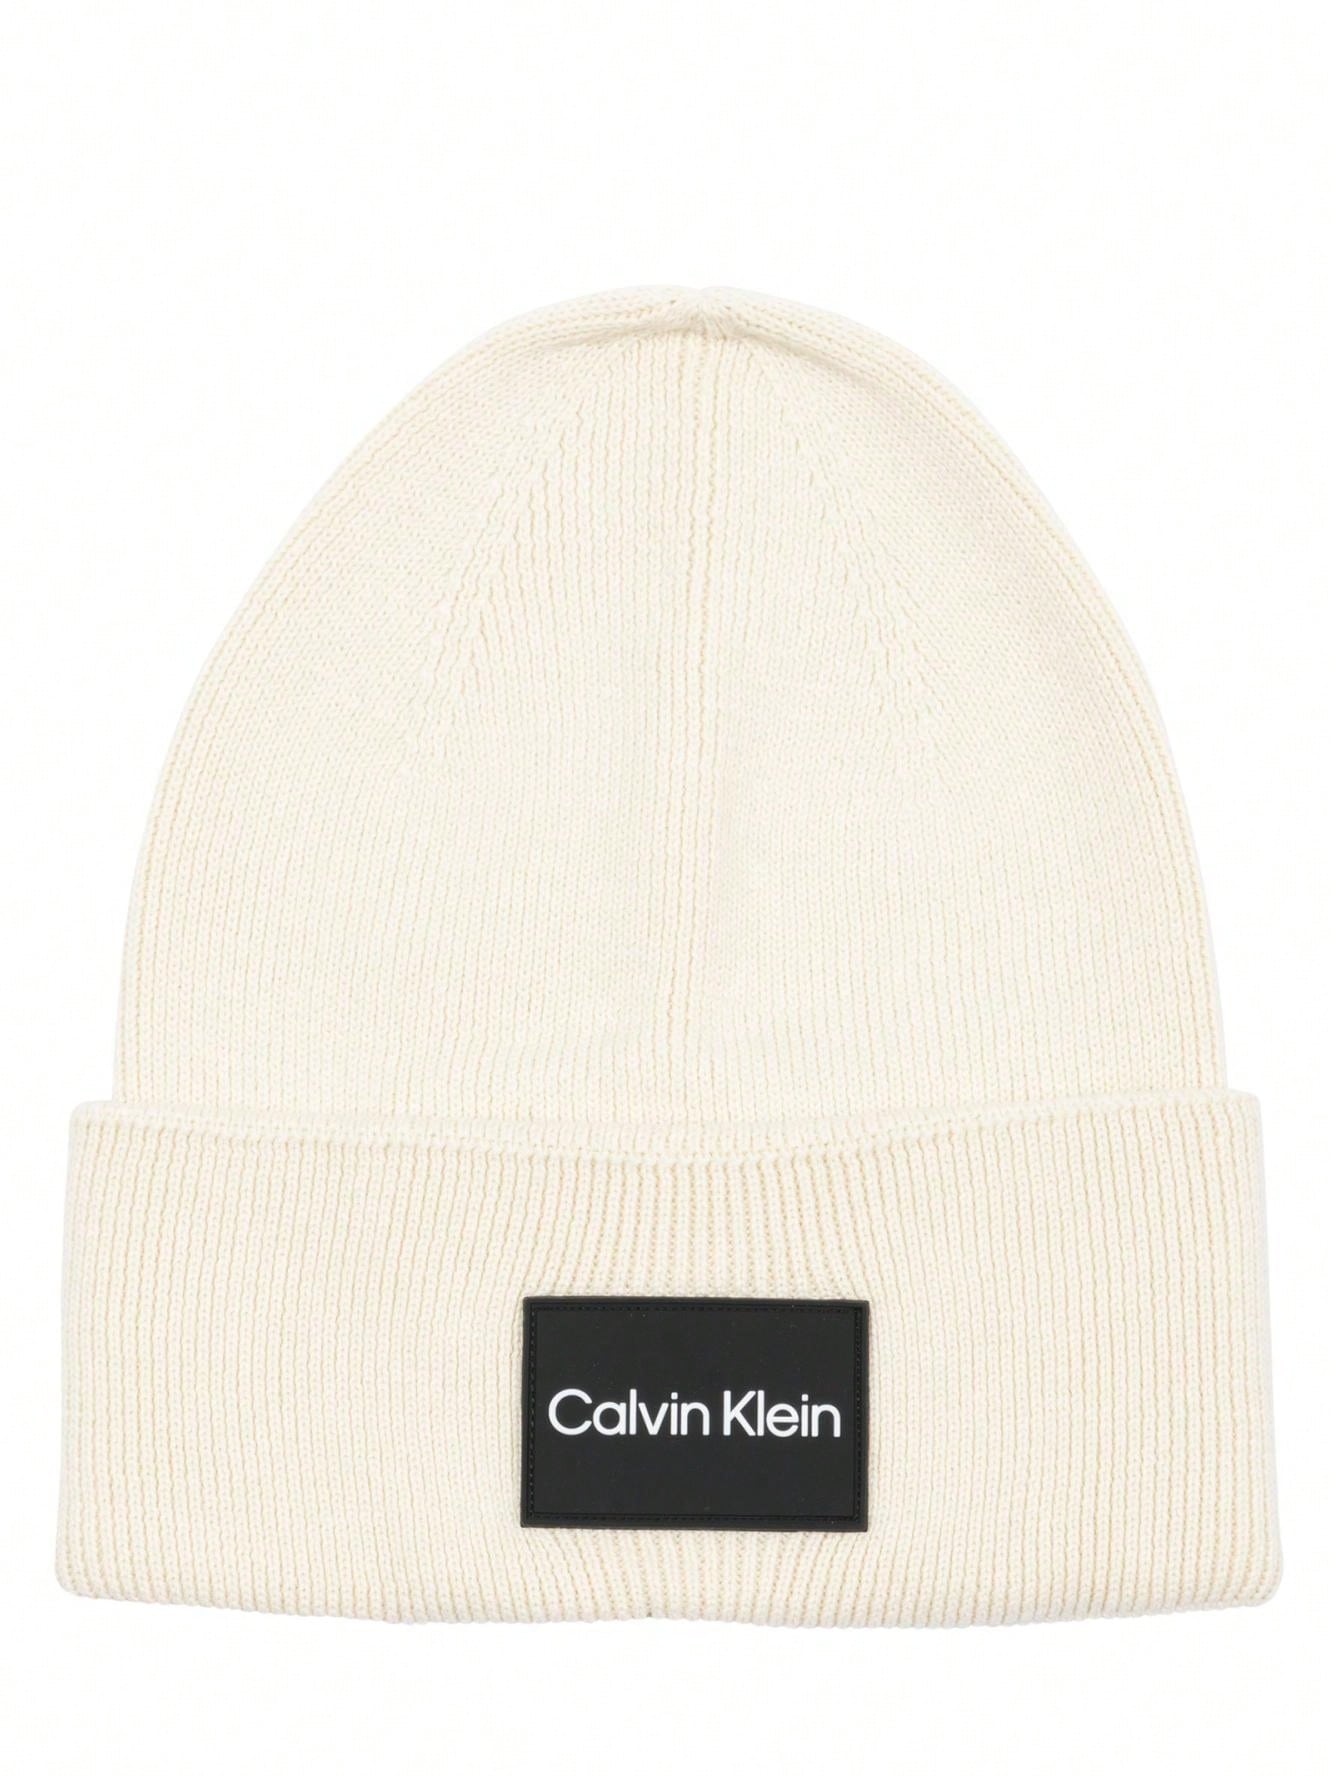 Мужские шапки Calvin Klein СВЕТЛО-КОРИЧНЕВЫЕ K50K510986PC4, коричневый